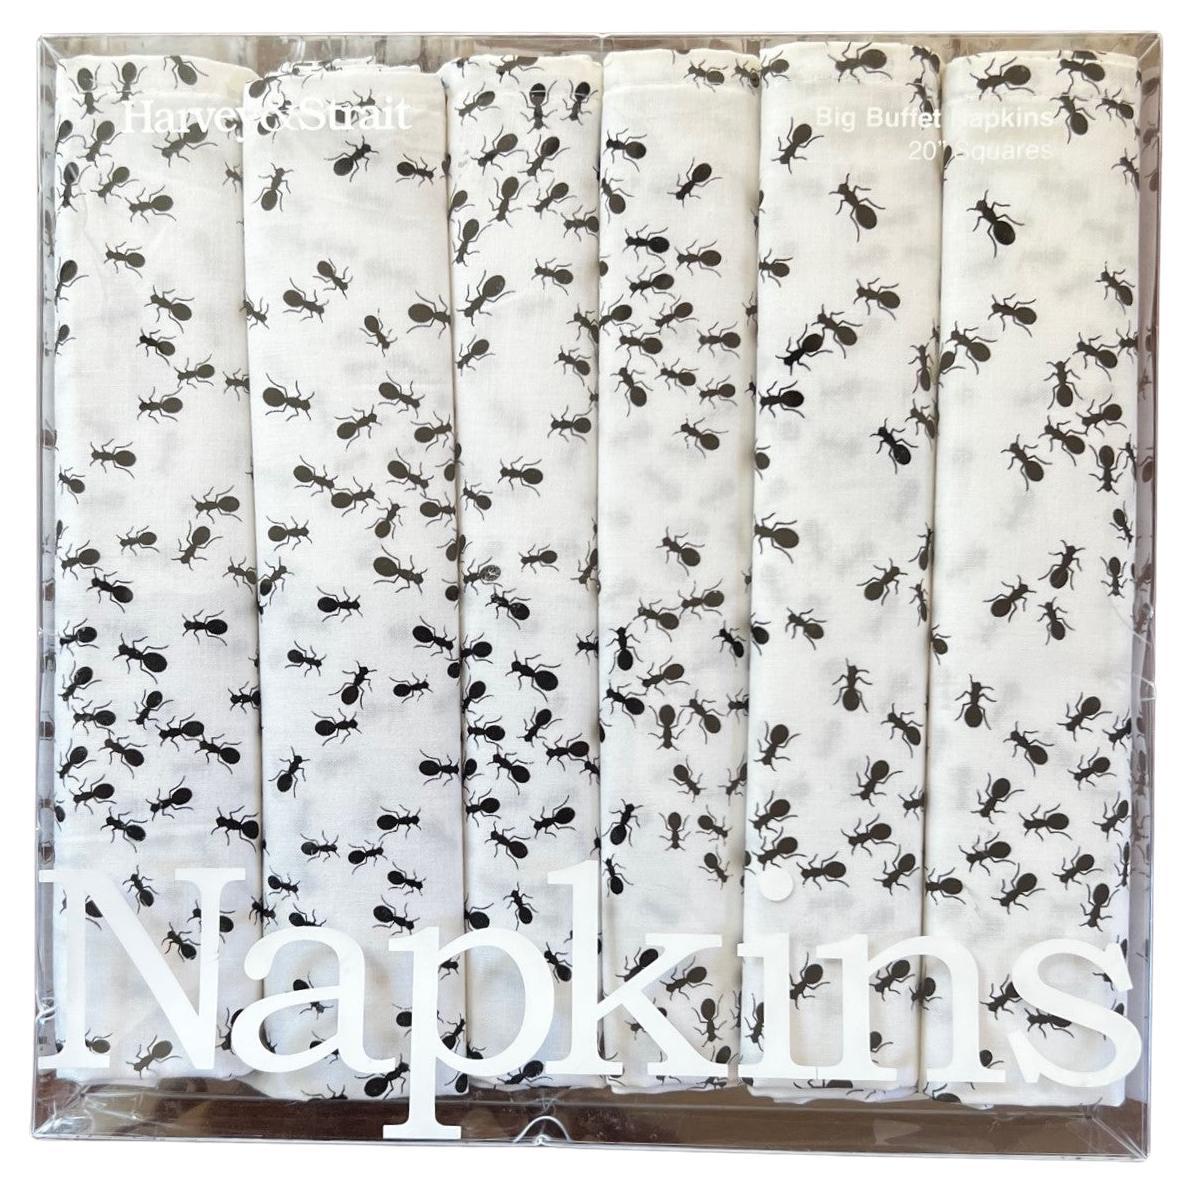 Ensemble de 6 serviettes de table Harvey & Strait Buffet en coton blanc avec fourmis noires